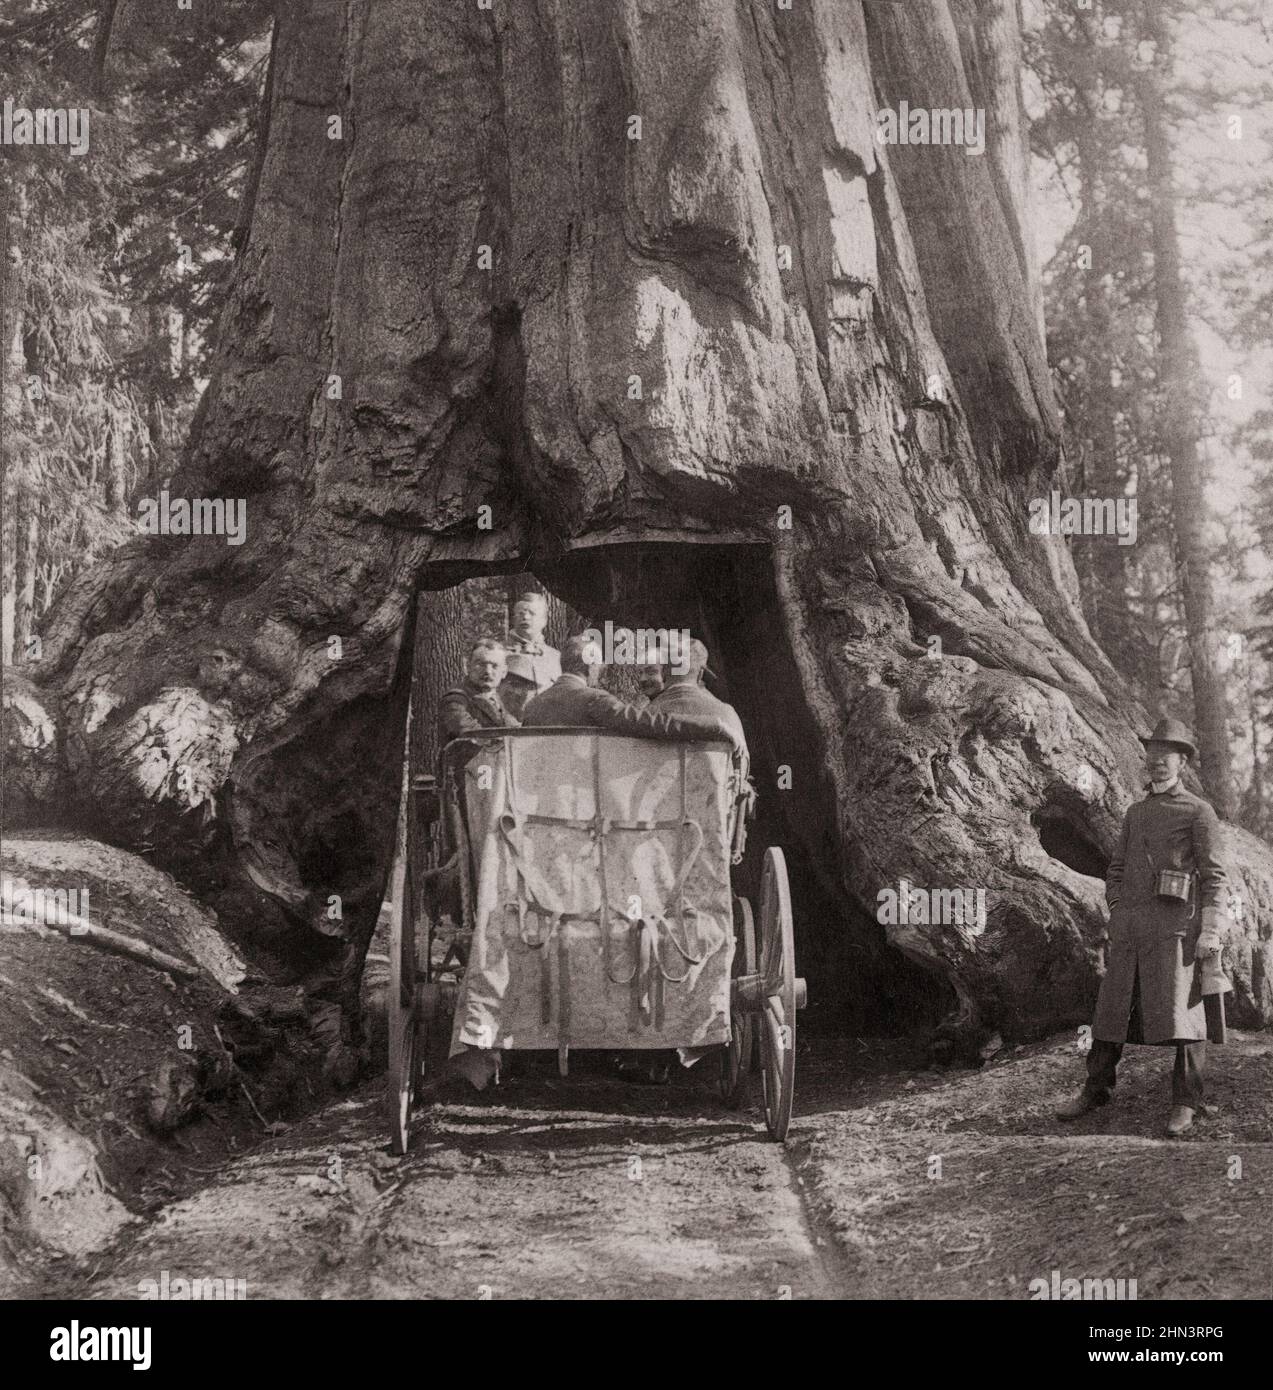 Foto d'epoca del presidente Roosevelt in mezzo a 'Nature's Wonders' - Guida attraverso Wawona, grandi alberi della California. USA. Luglio 1903 Foto Stock